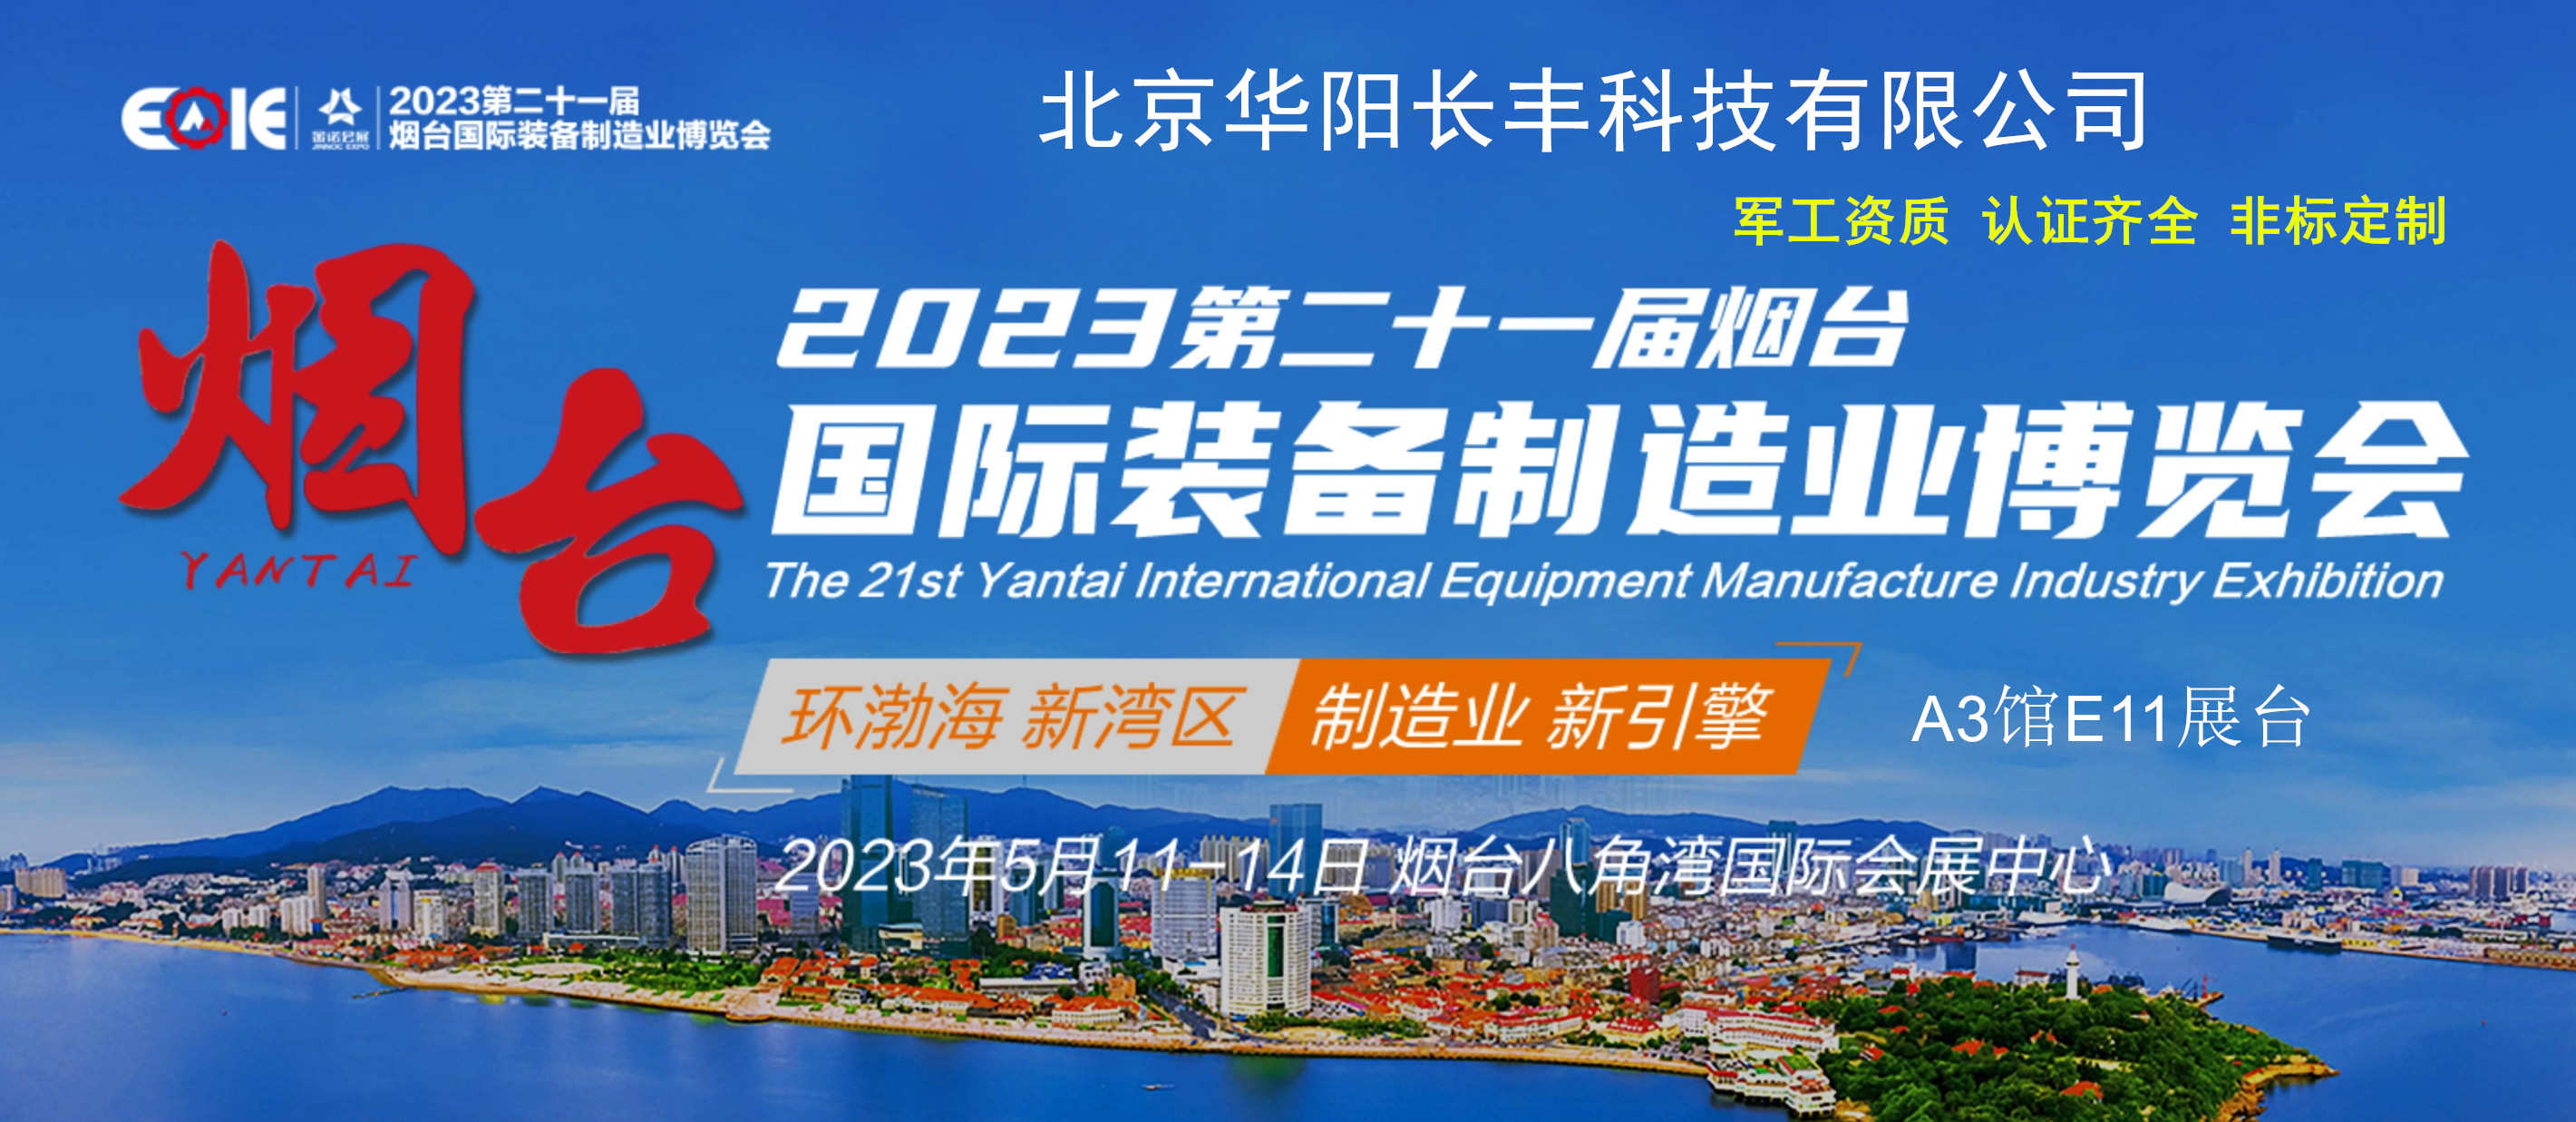 第25届烟台国际装备制造业博览会